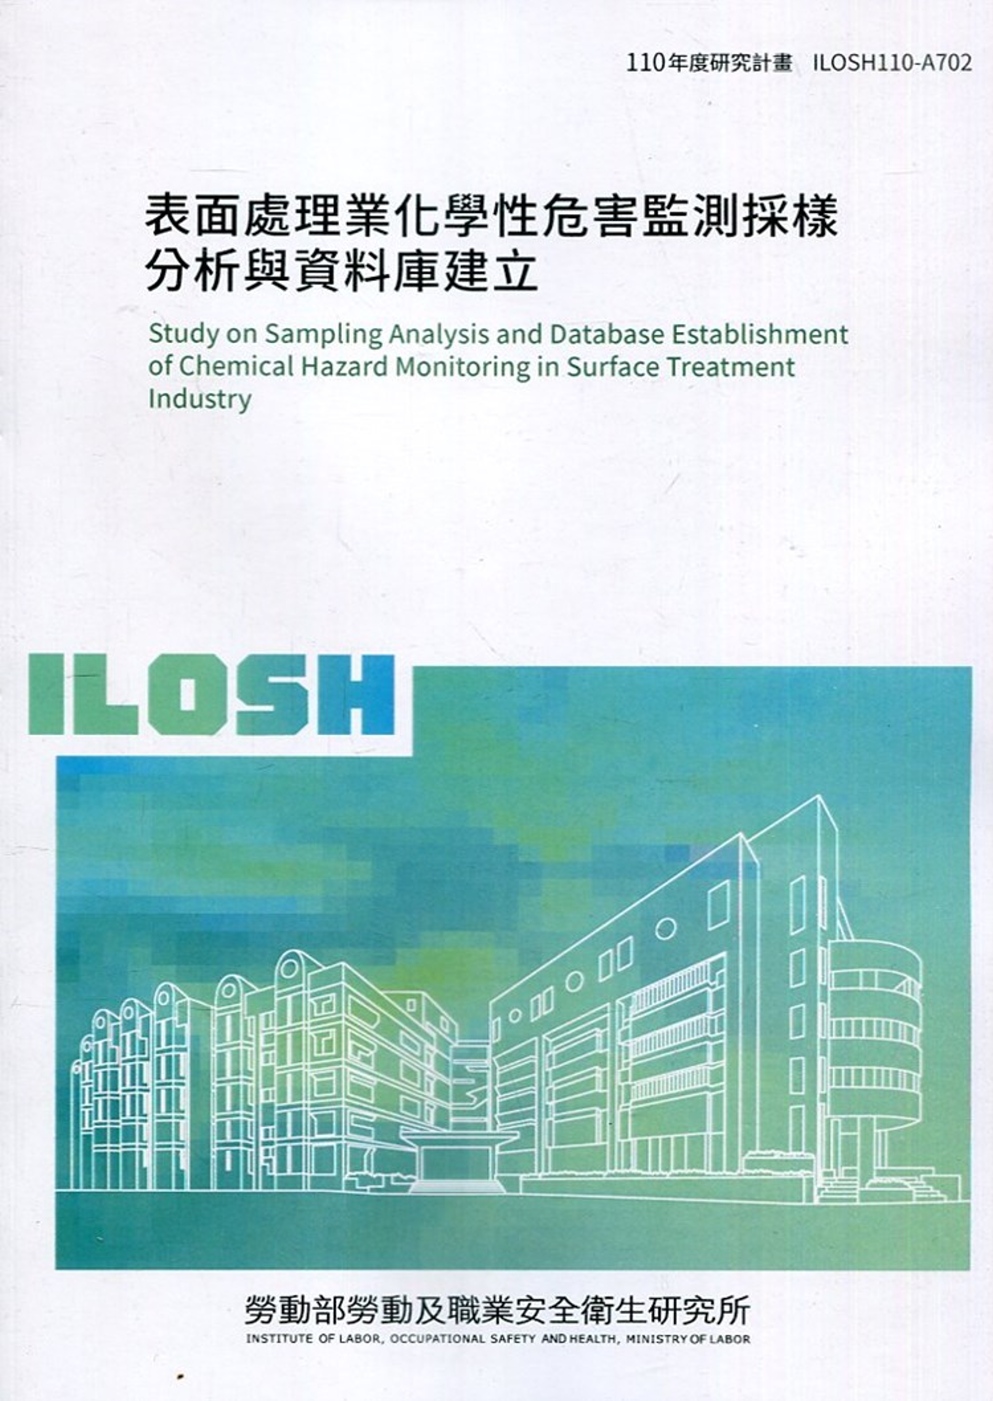 表面處理業化學性危害監測採樣分析與資料庫建立 ILOSH110-A702